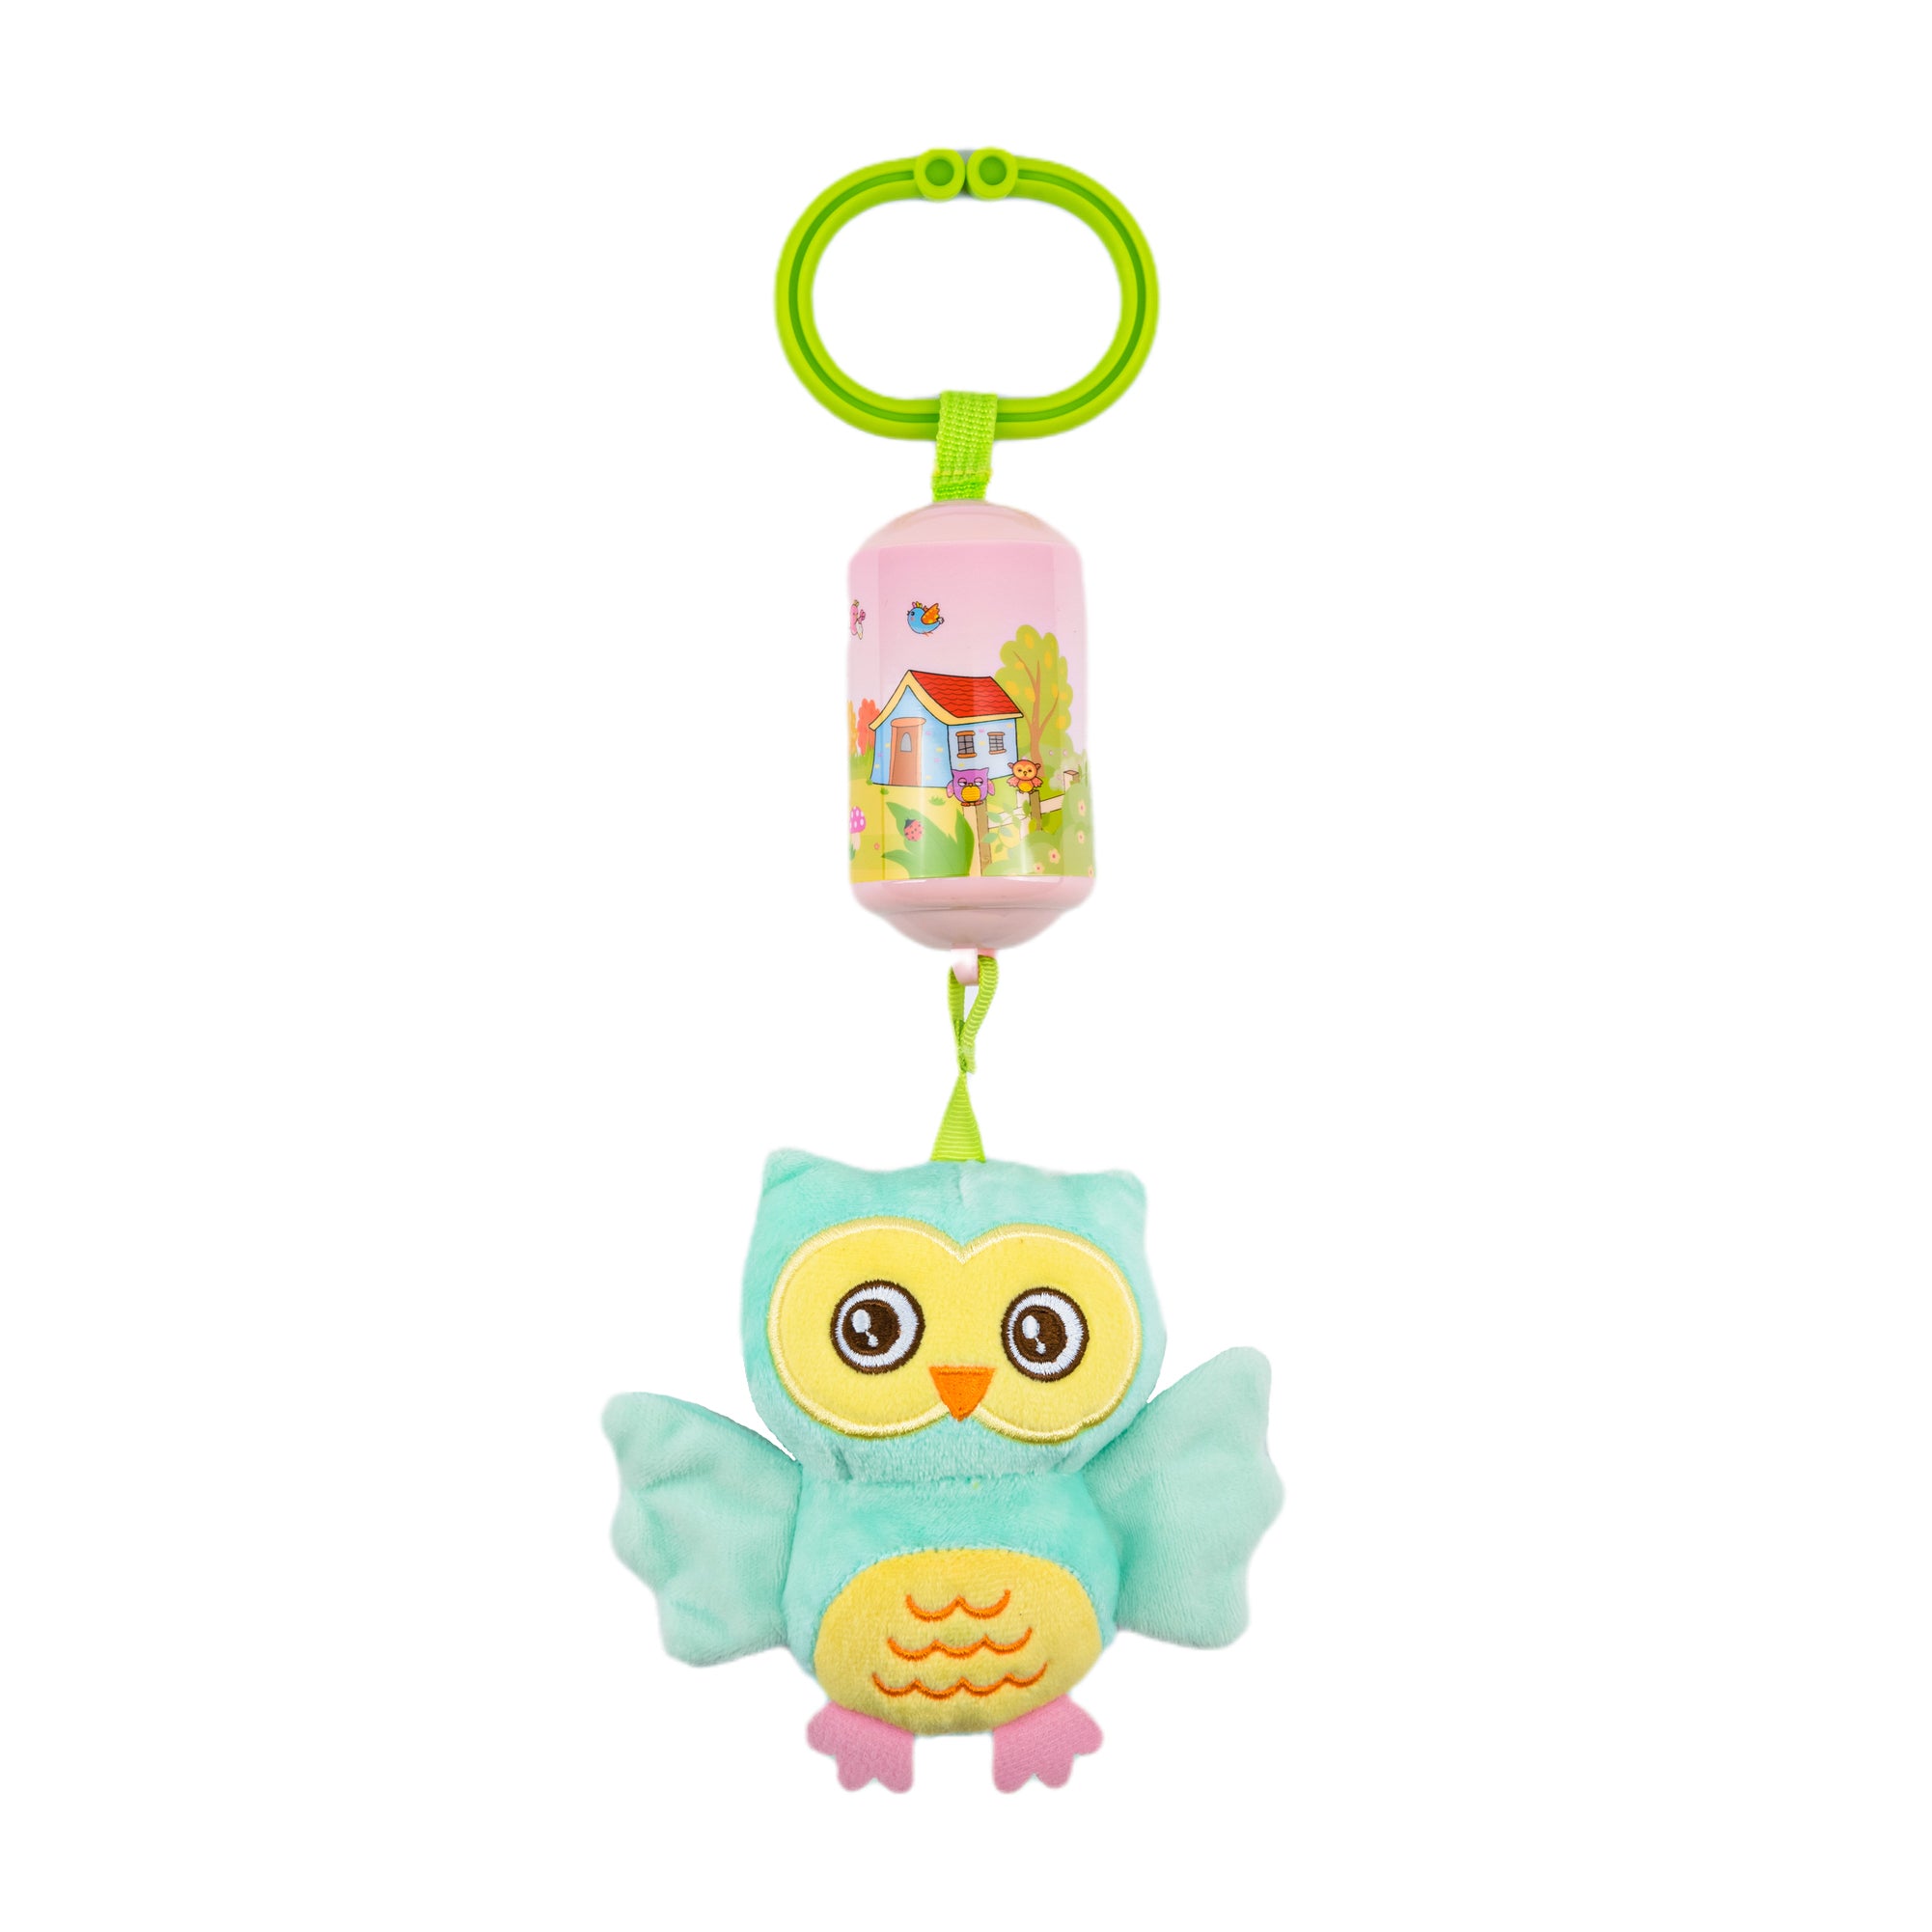 Soft Toy Owl